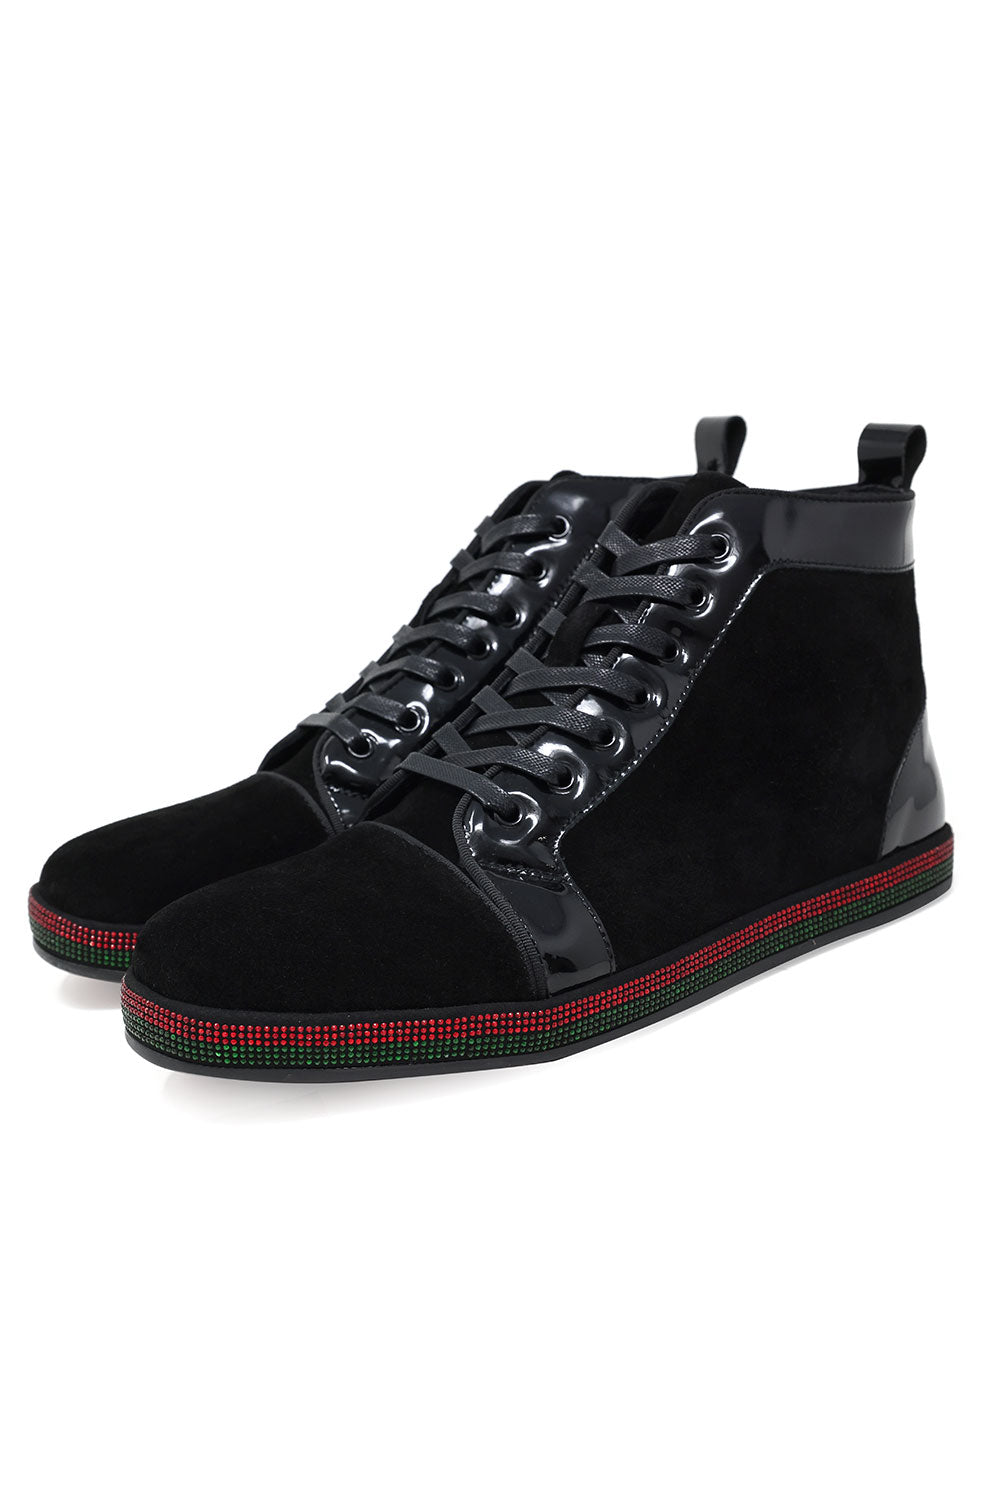 Barabas Men's Red Green Rhinestone Black Velvet Sneakers SH720